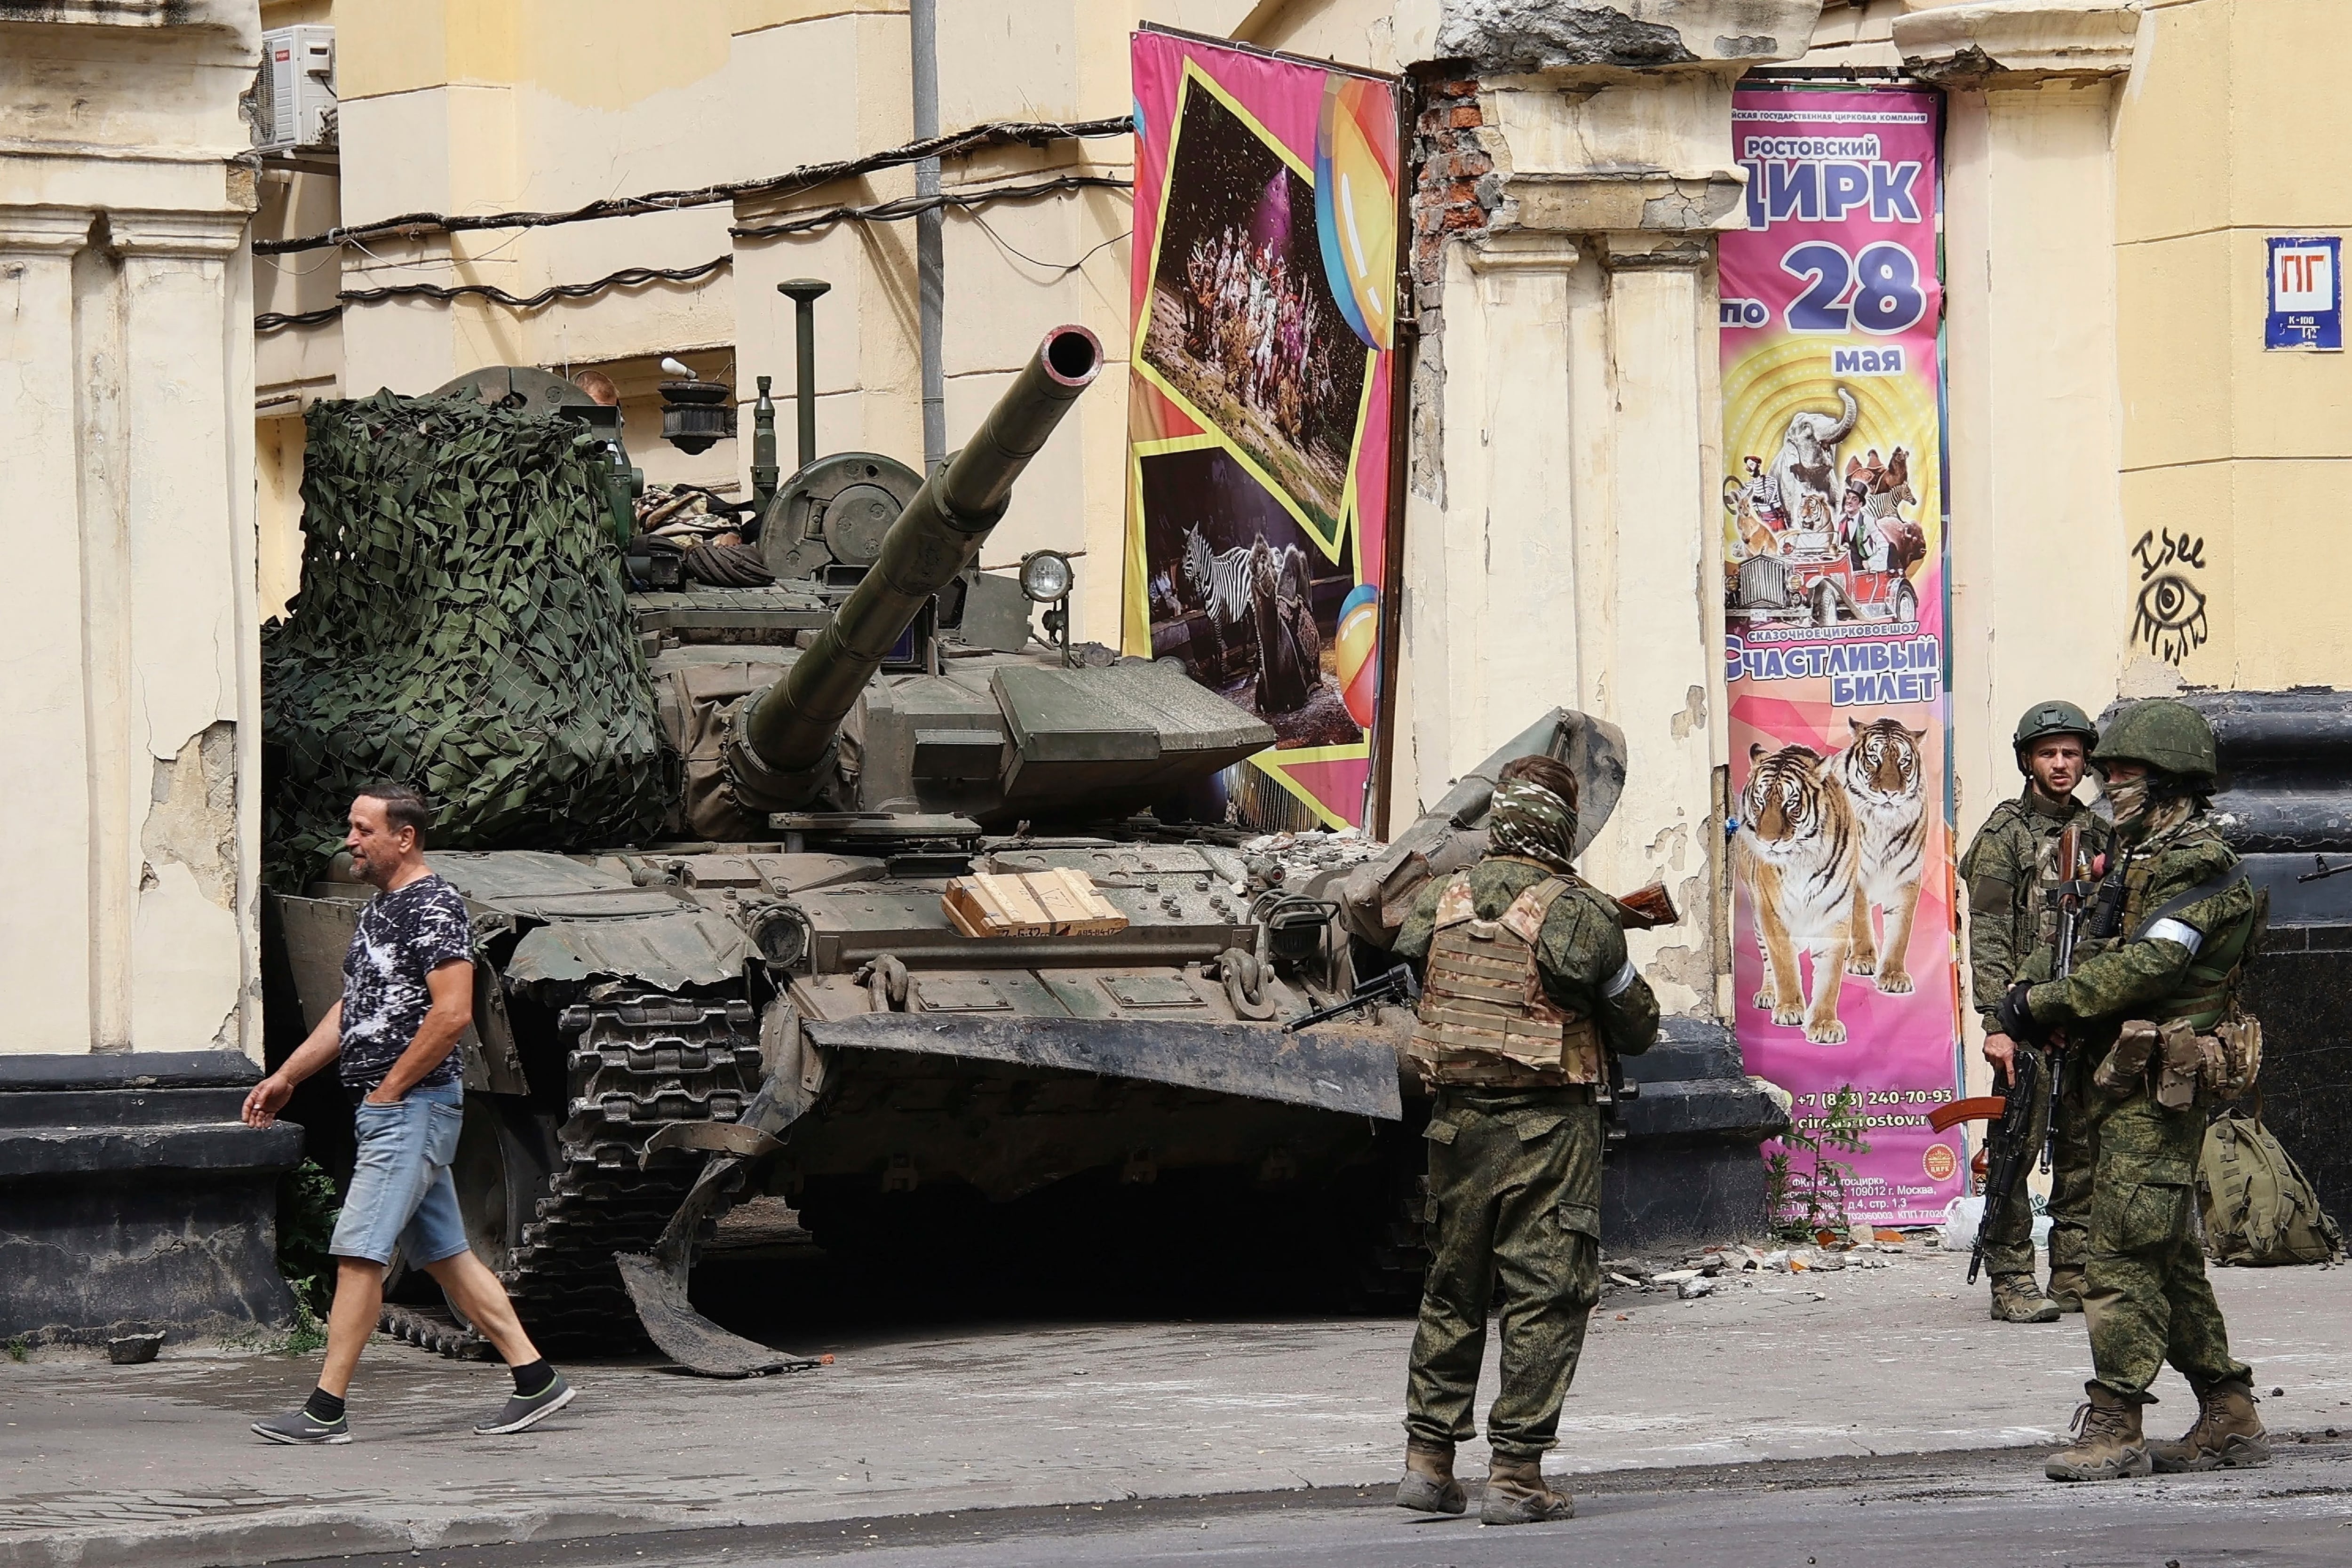 ON HOLD TO GO WITH RUSSIA BELARUS WAGNER STORY FILE Efectivos de la guardia del Grupo Wagner están frente a un tanque en una calle de Rostov, Rusia, 24 de junio de 2023. (Vasily Deryugin, Kommersant Publishing House via AP, File)